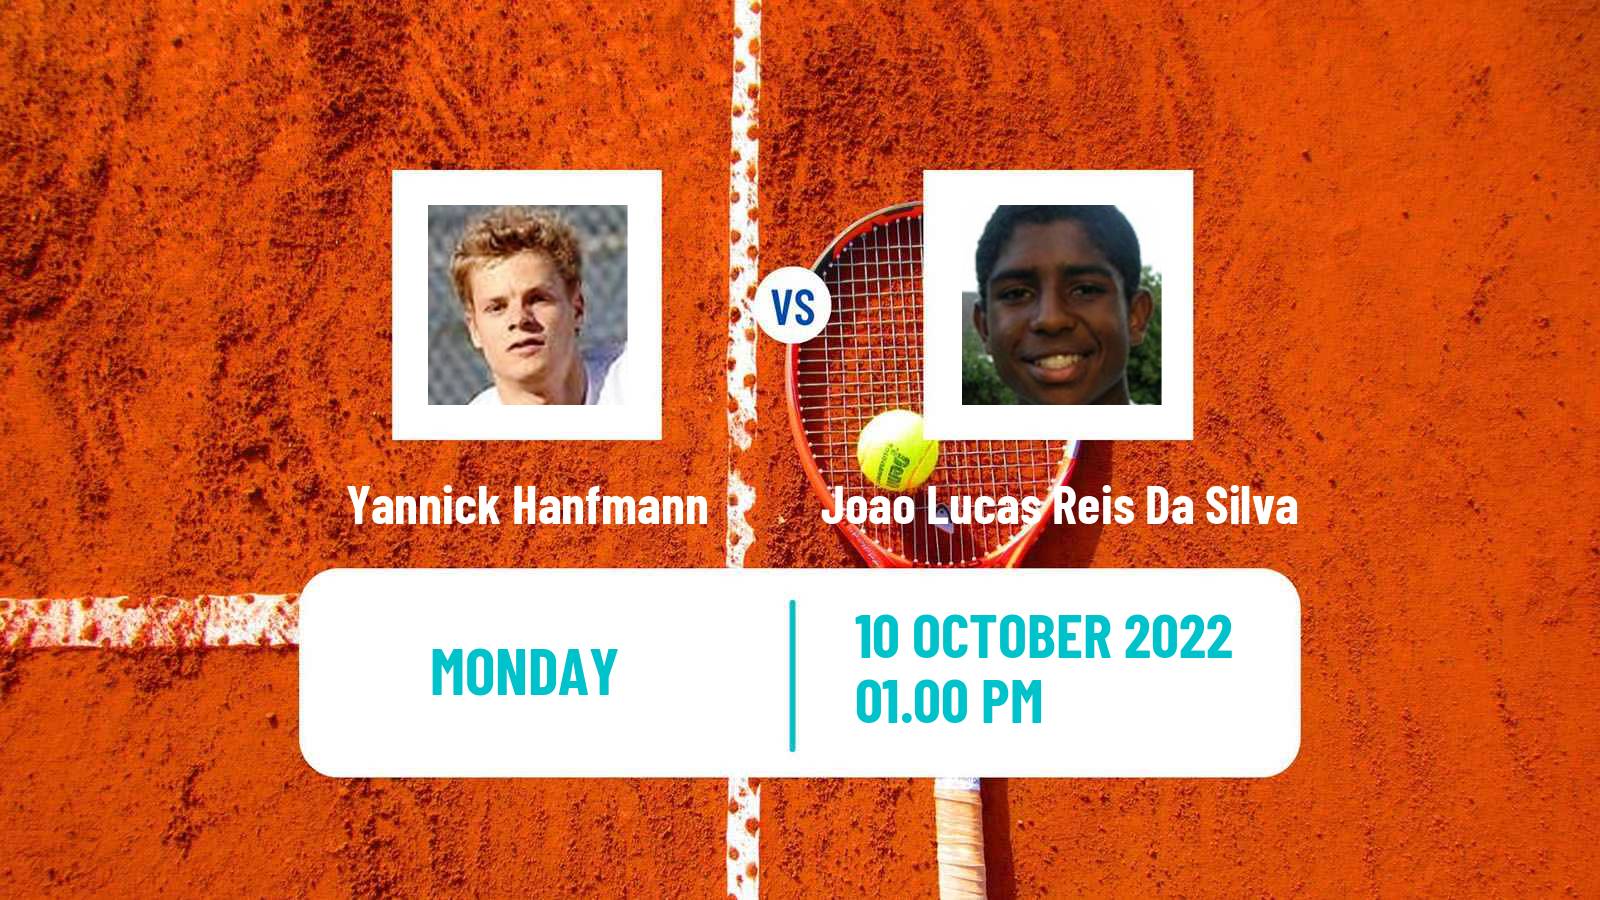 Tennis ATP Challenger Yannick Hanfmann - Joao Lucas Reis Da Silva